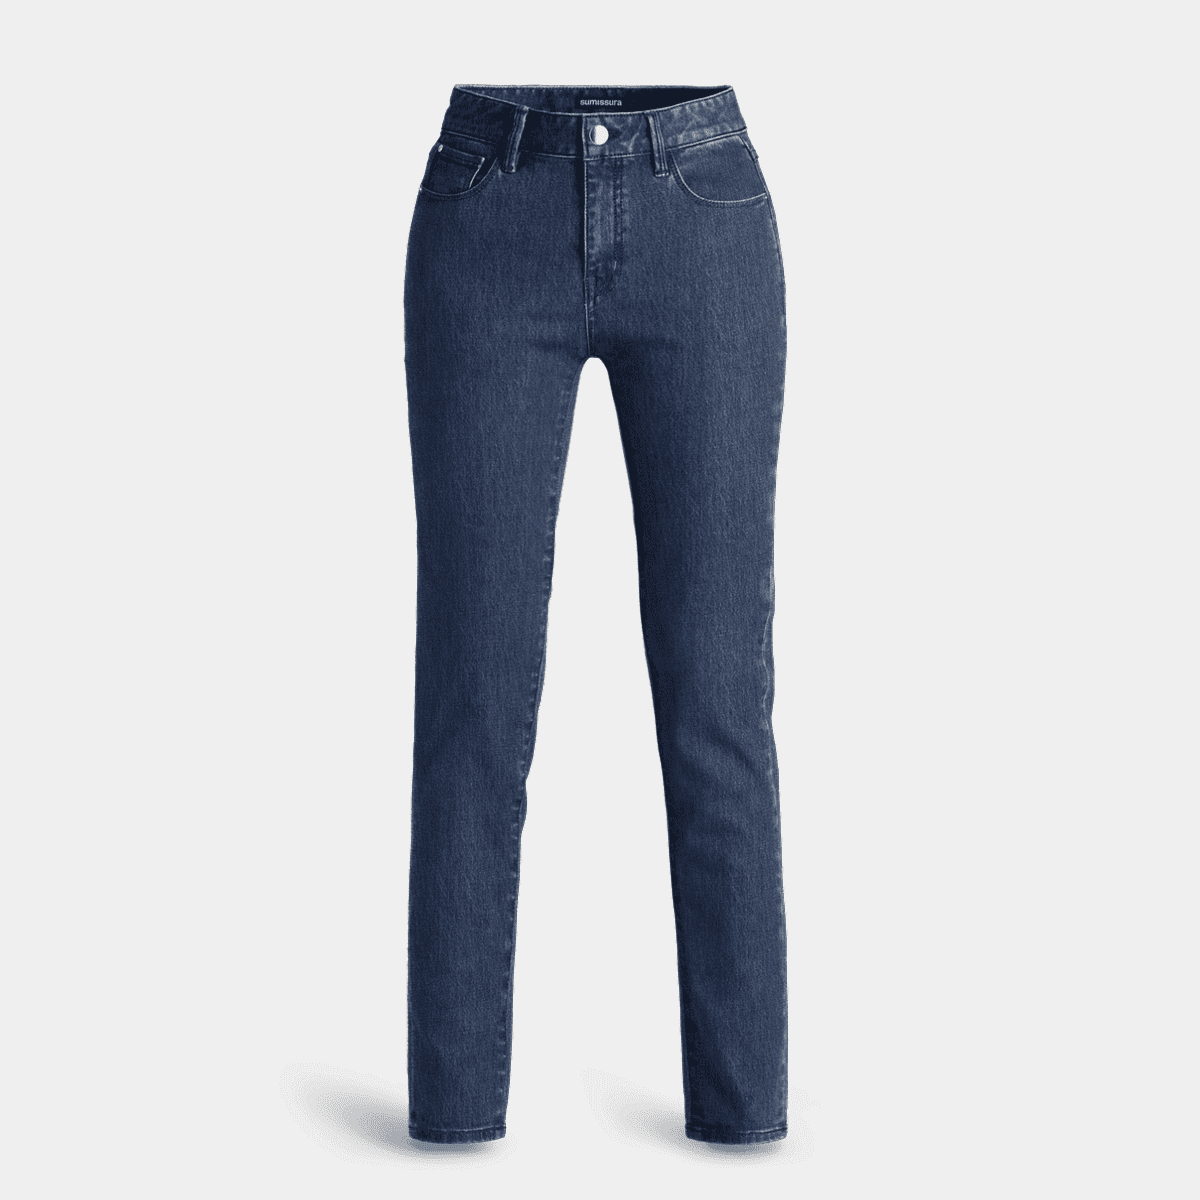 Denim-classic clean dark indigo Slim fit Jeans